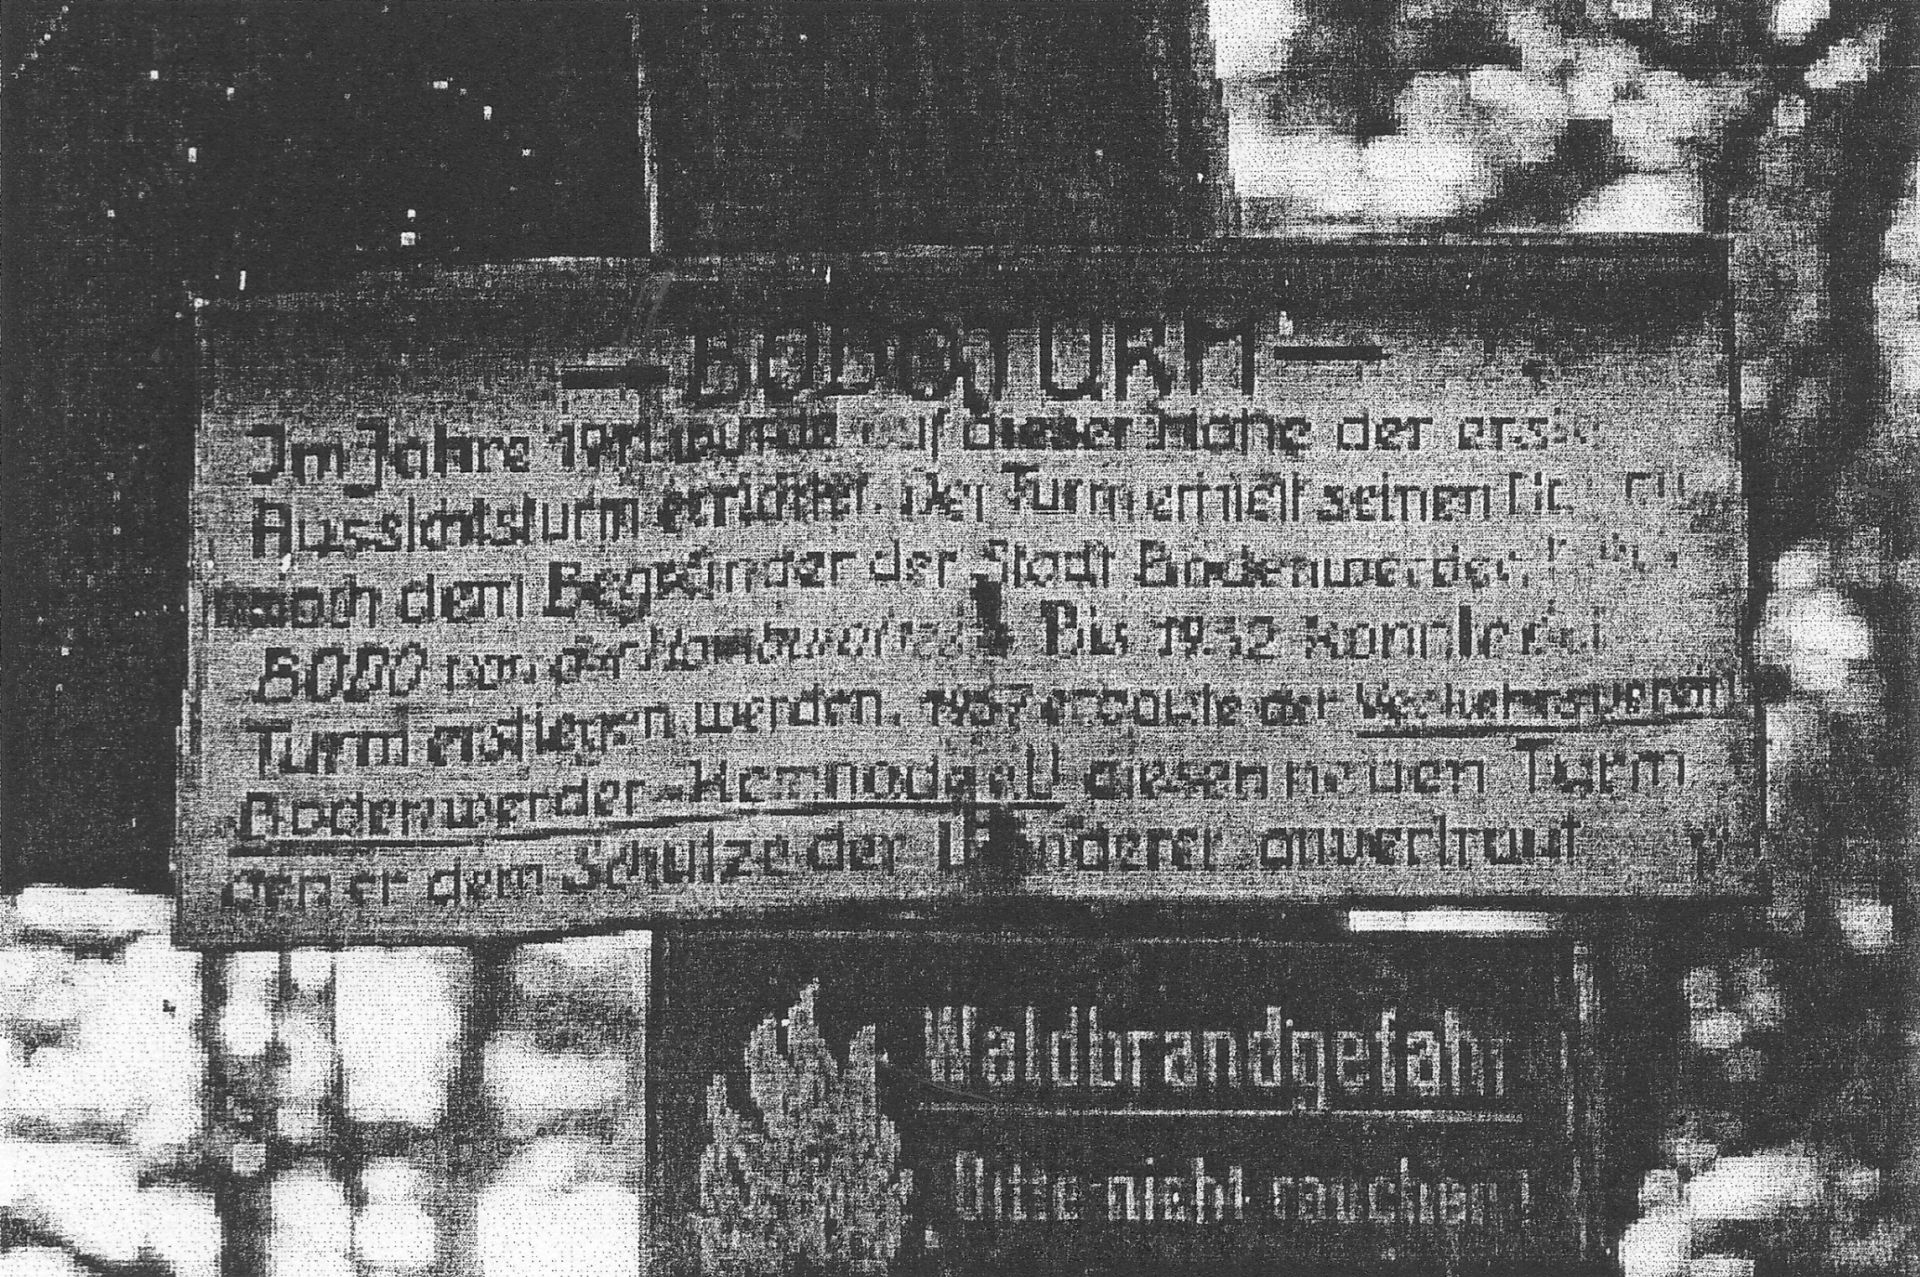 Inschrift am Bodoturm